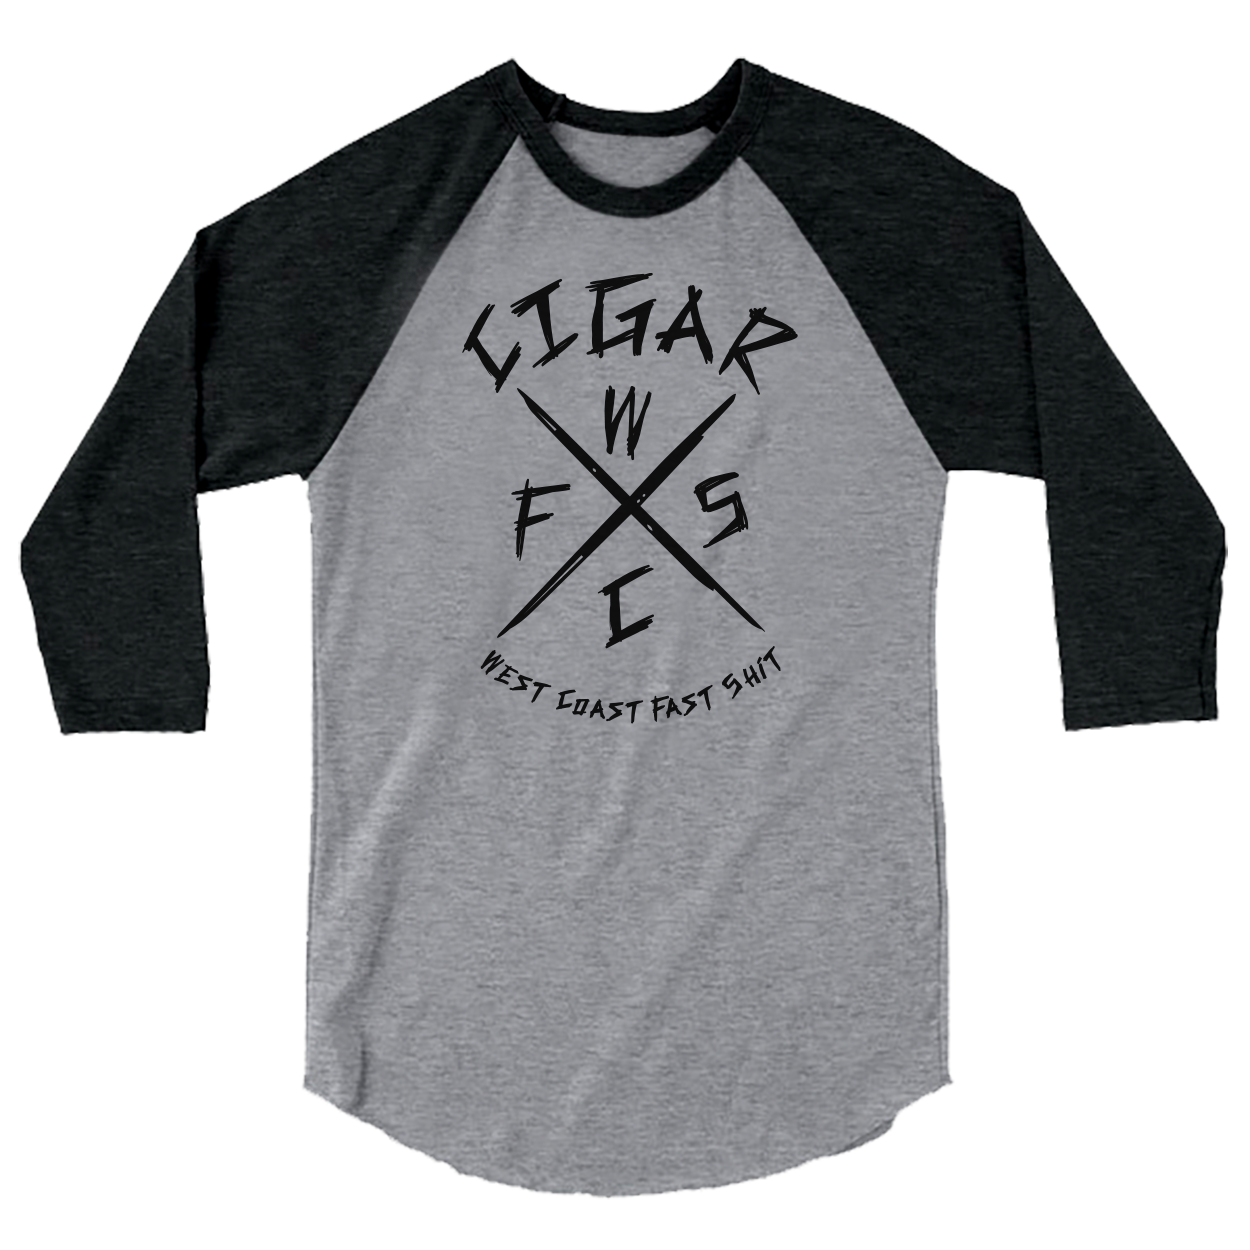 CIGAR - "West Coast Fast Shit" (Sport Grey/Black) (Raglan T-Shirt)